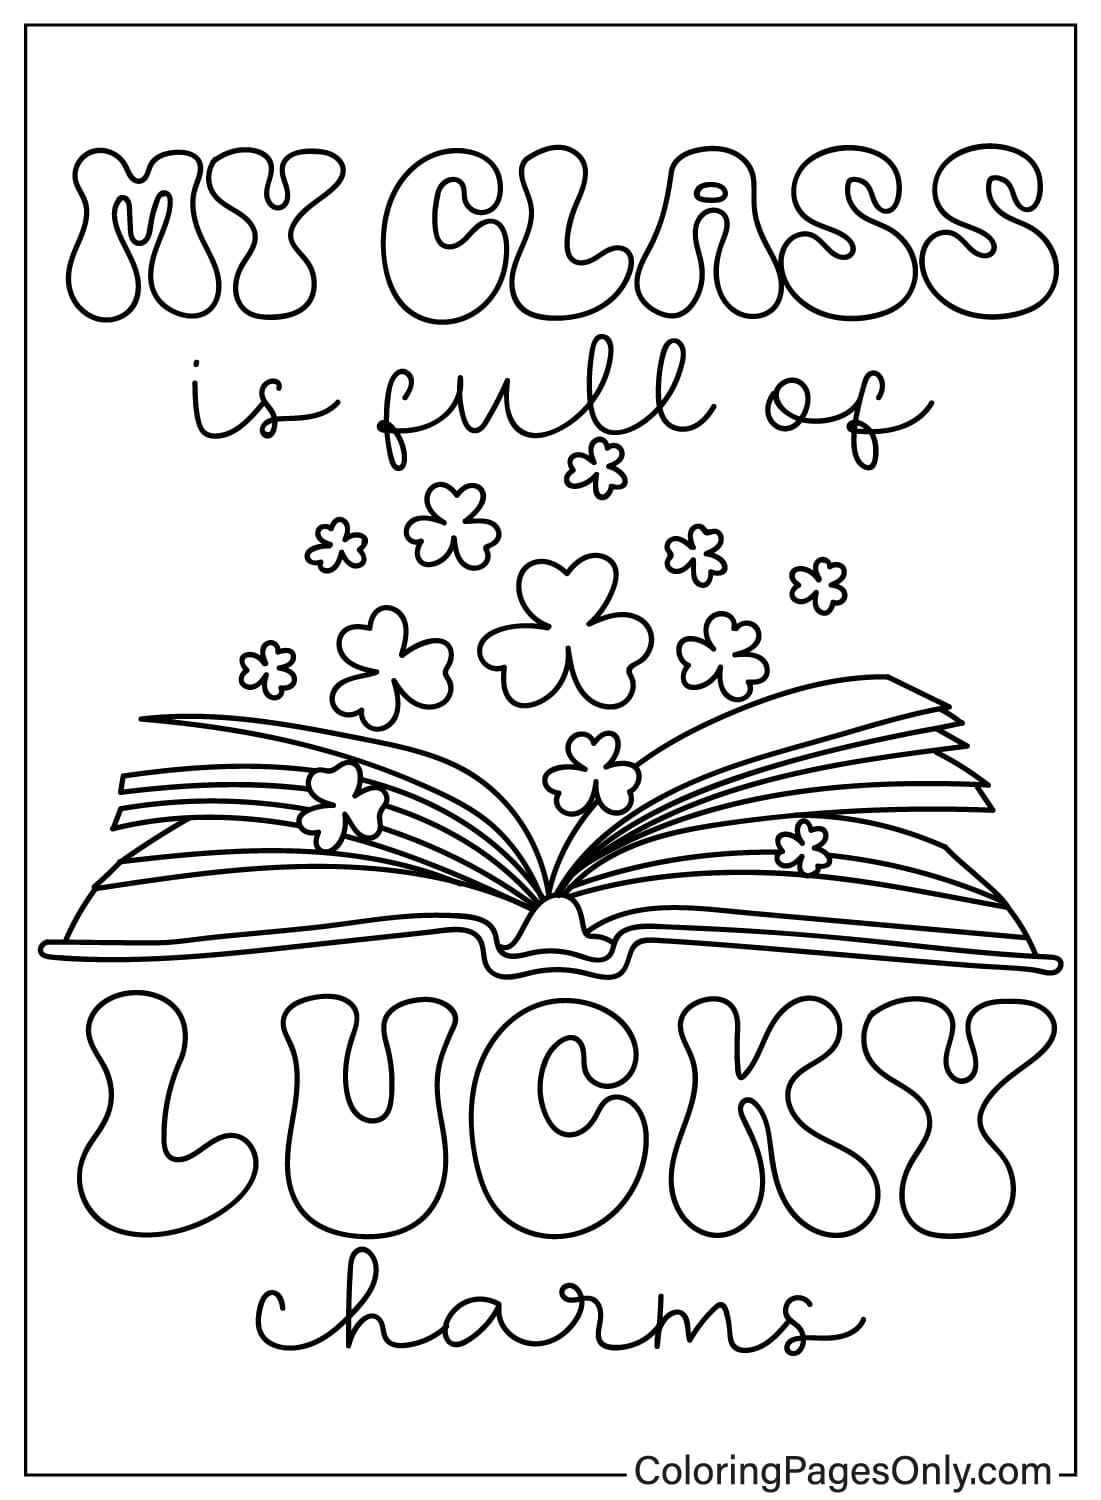 Página para colorear de Lucky Charms imprimible de Lucky Charms